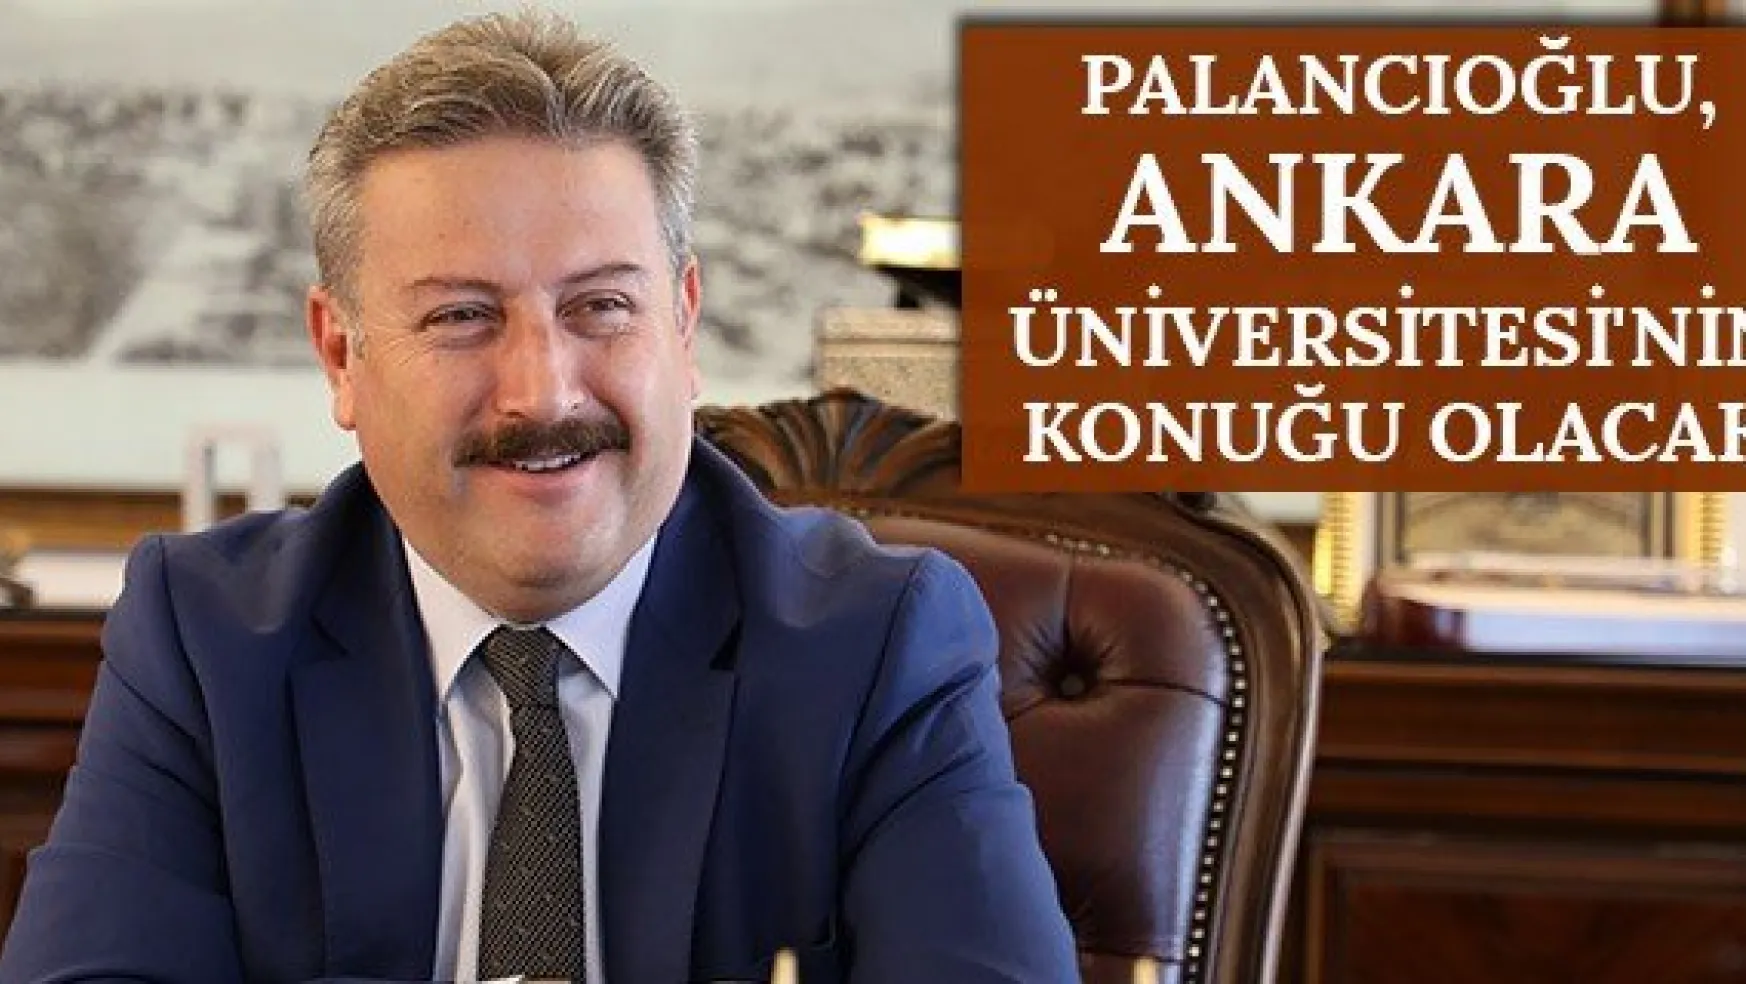 Palancıoğlu, Ankara Üniversitesi'nin konuğu olacak